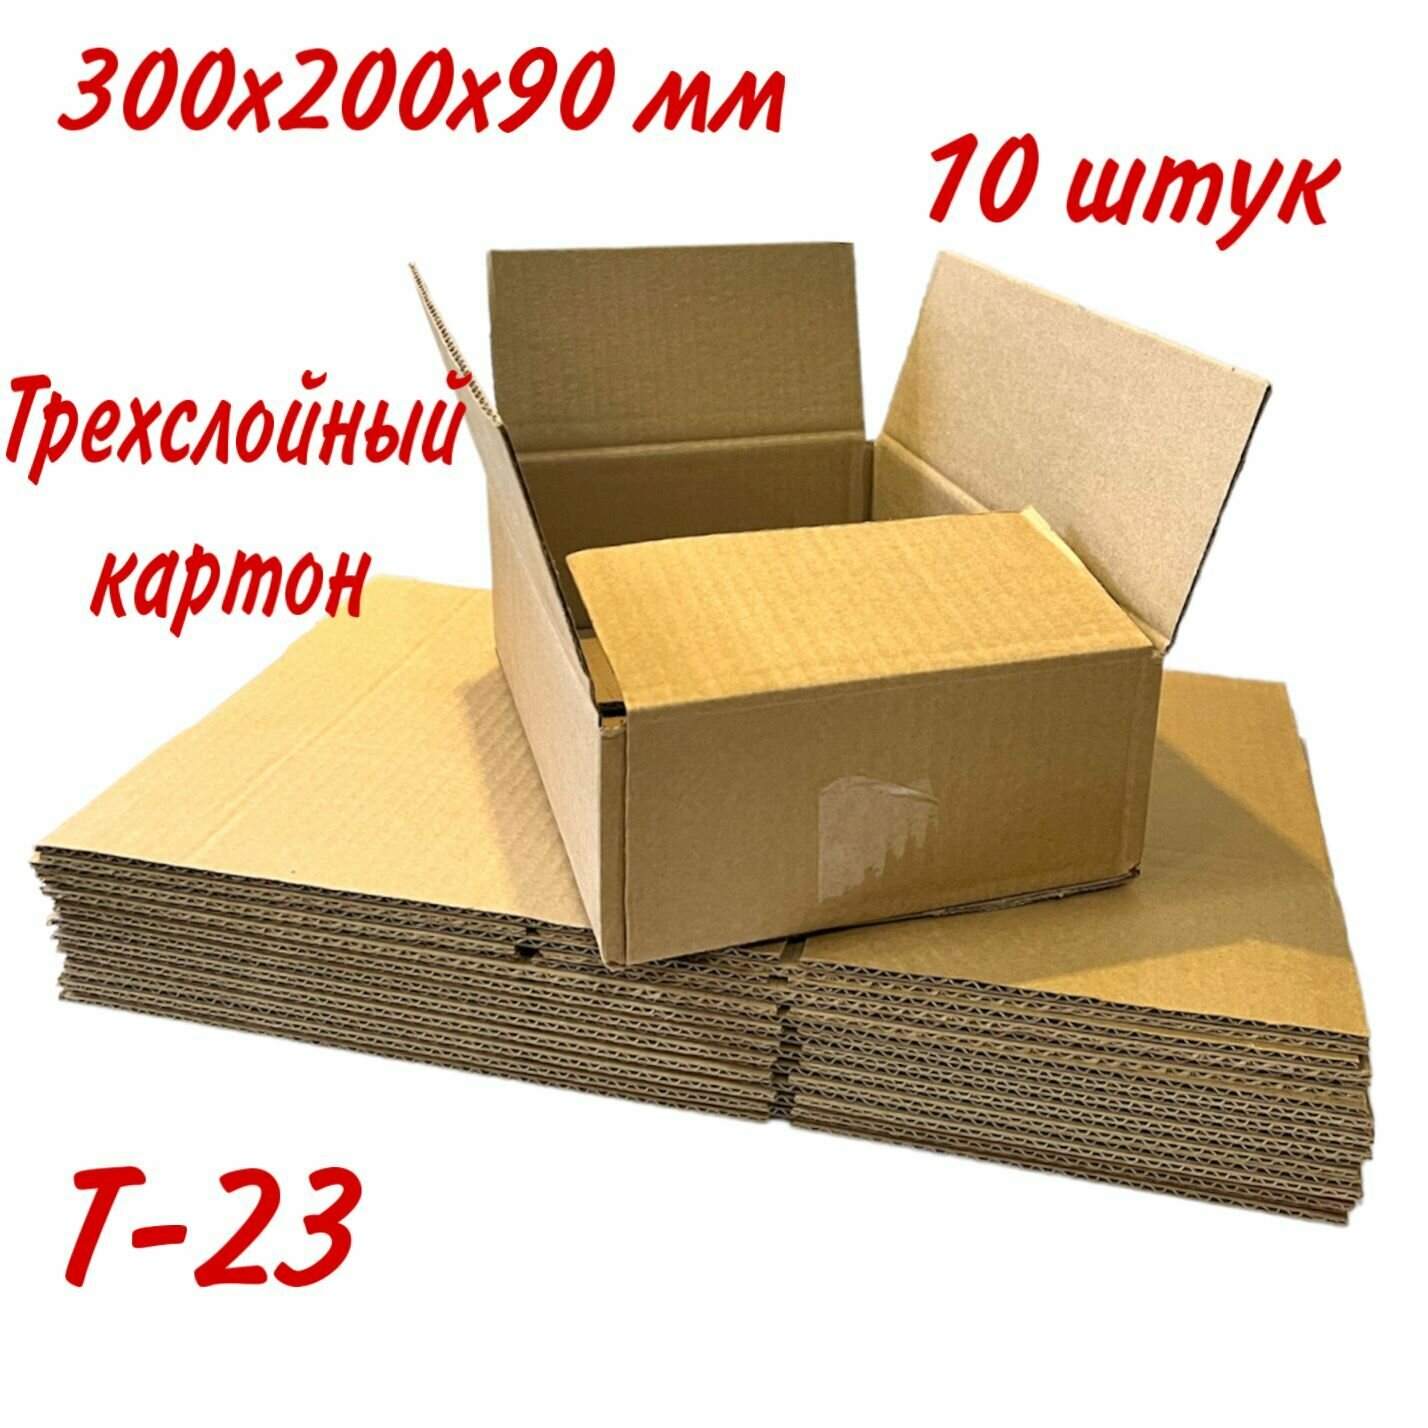 Картонная коробка четырехклапанная для переезда, хранения, трехслойный картон Т23, 300х200х90 мм, 10 штук